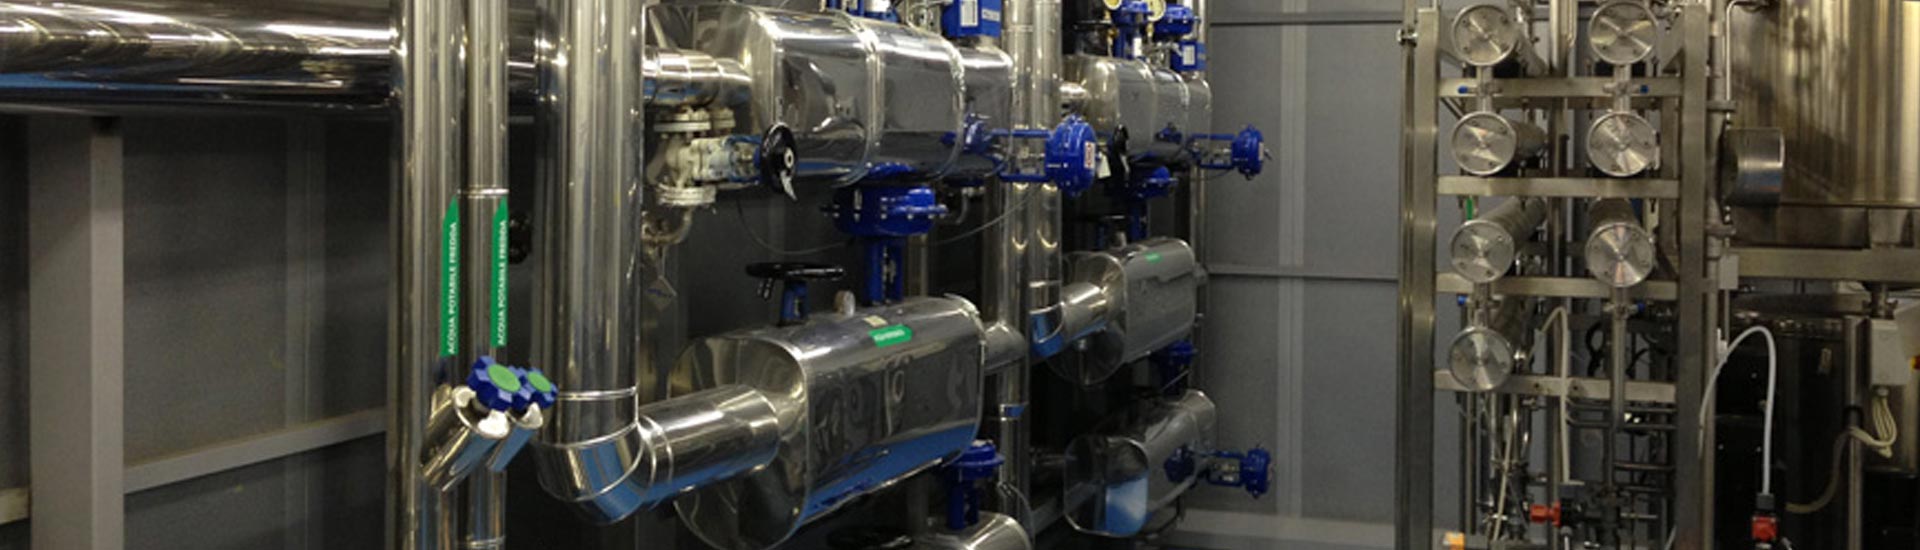 impianto distribuzione fluidi per aziende farmaceutiche, osmosi generatore di vapore wifi ozonizzatore